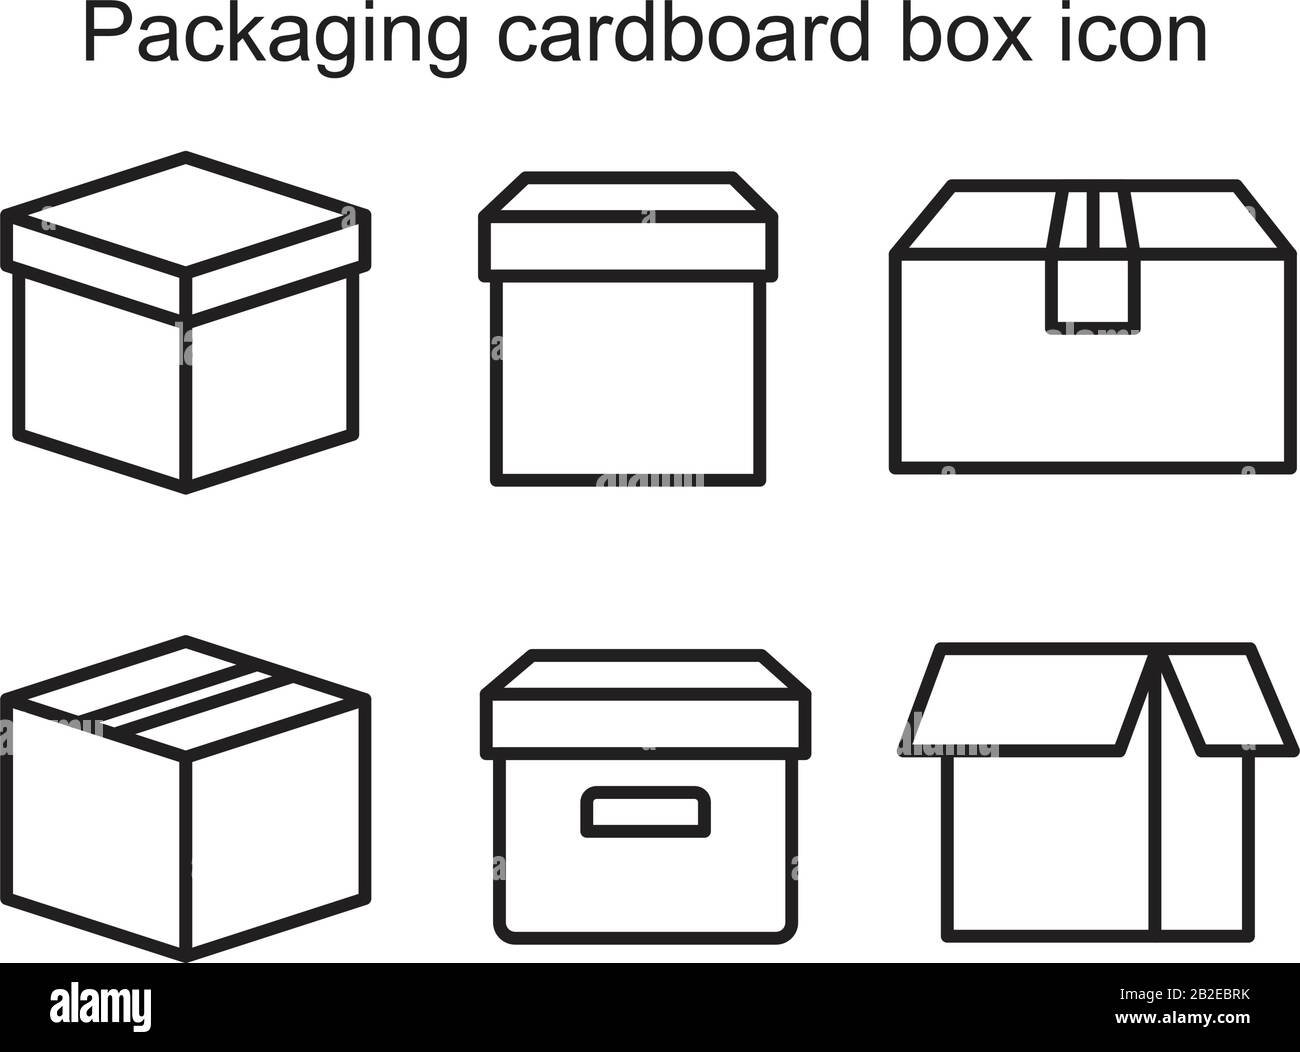 Modèle d'icône de boîte en carton d'emballage noir modifiable. Emballage carton icône symbole boîte plate illustration vectorielle pour la conception graphique et web. Illustration de Vecteur